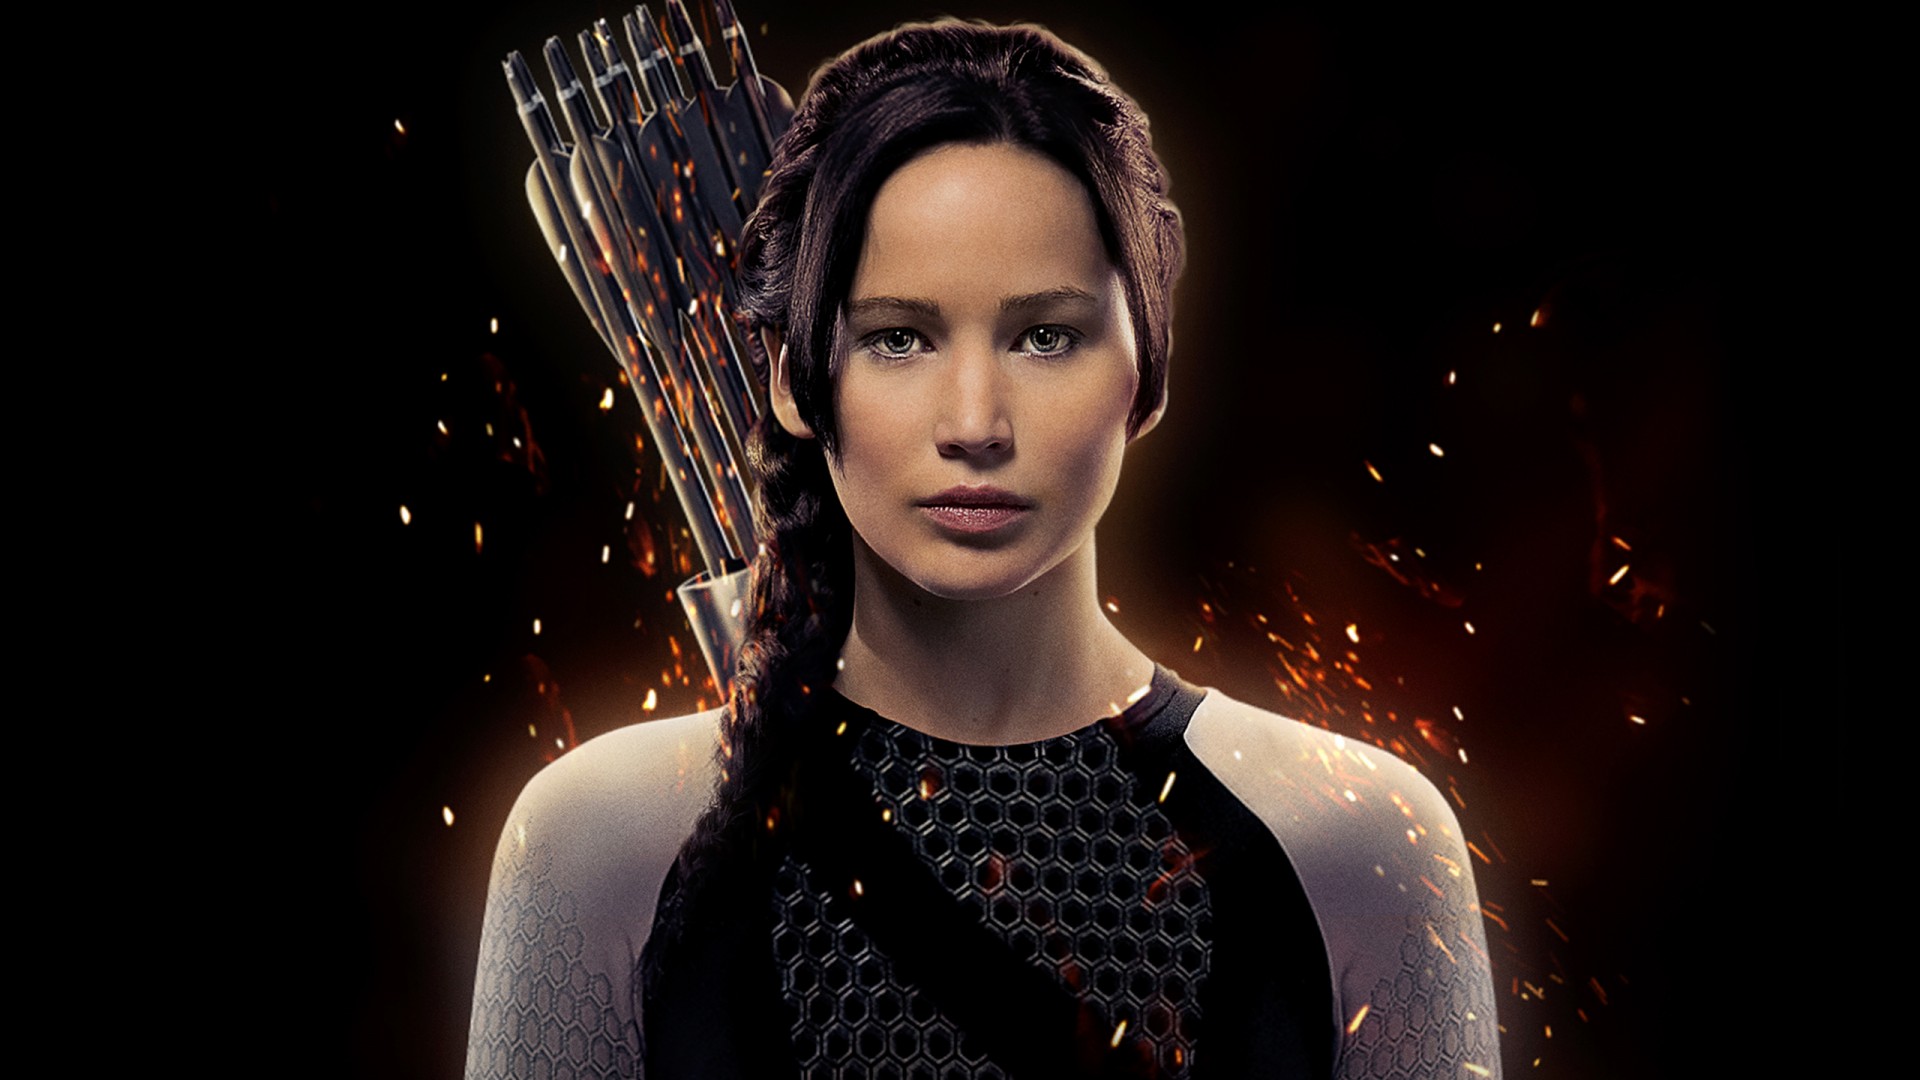 Jennifer Lawrence As Katniss Everdeen Hunger Games - Katniss Everdeen Wallpaper Hd - HD Wallpaper 